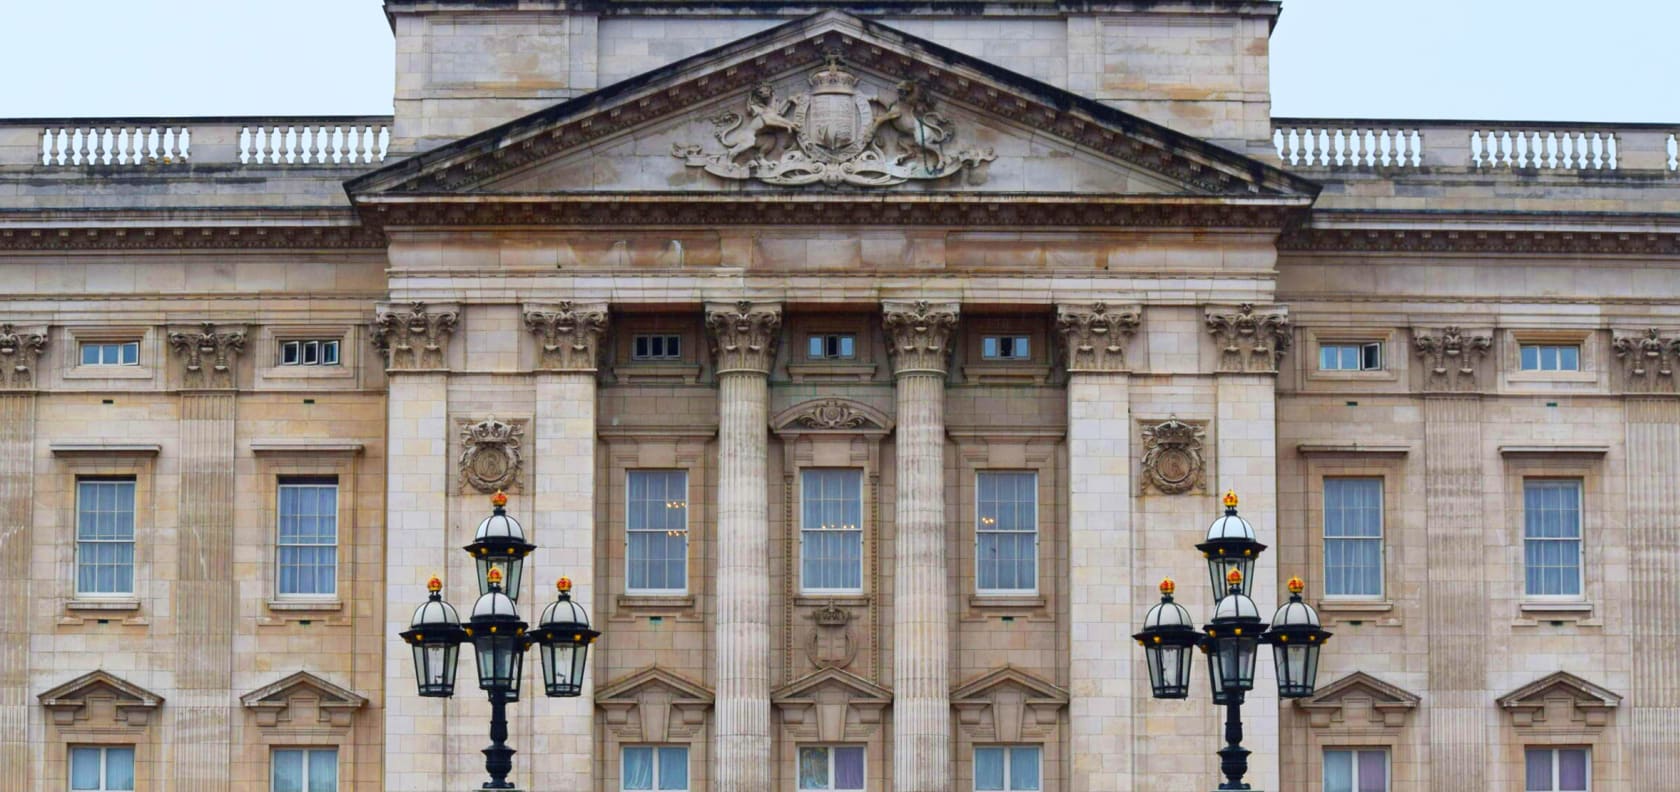 Buckingham palace.